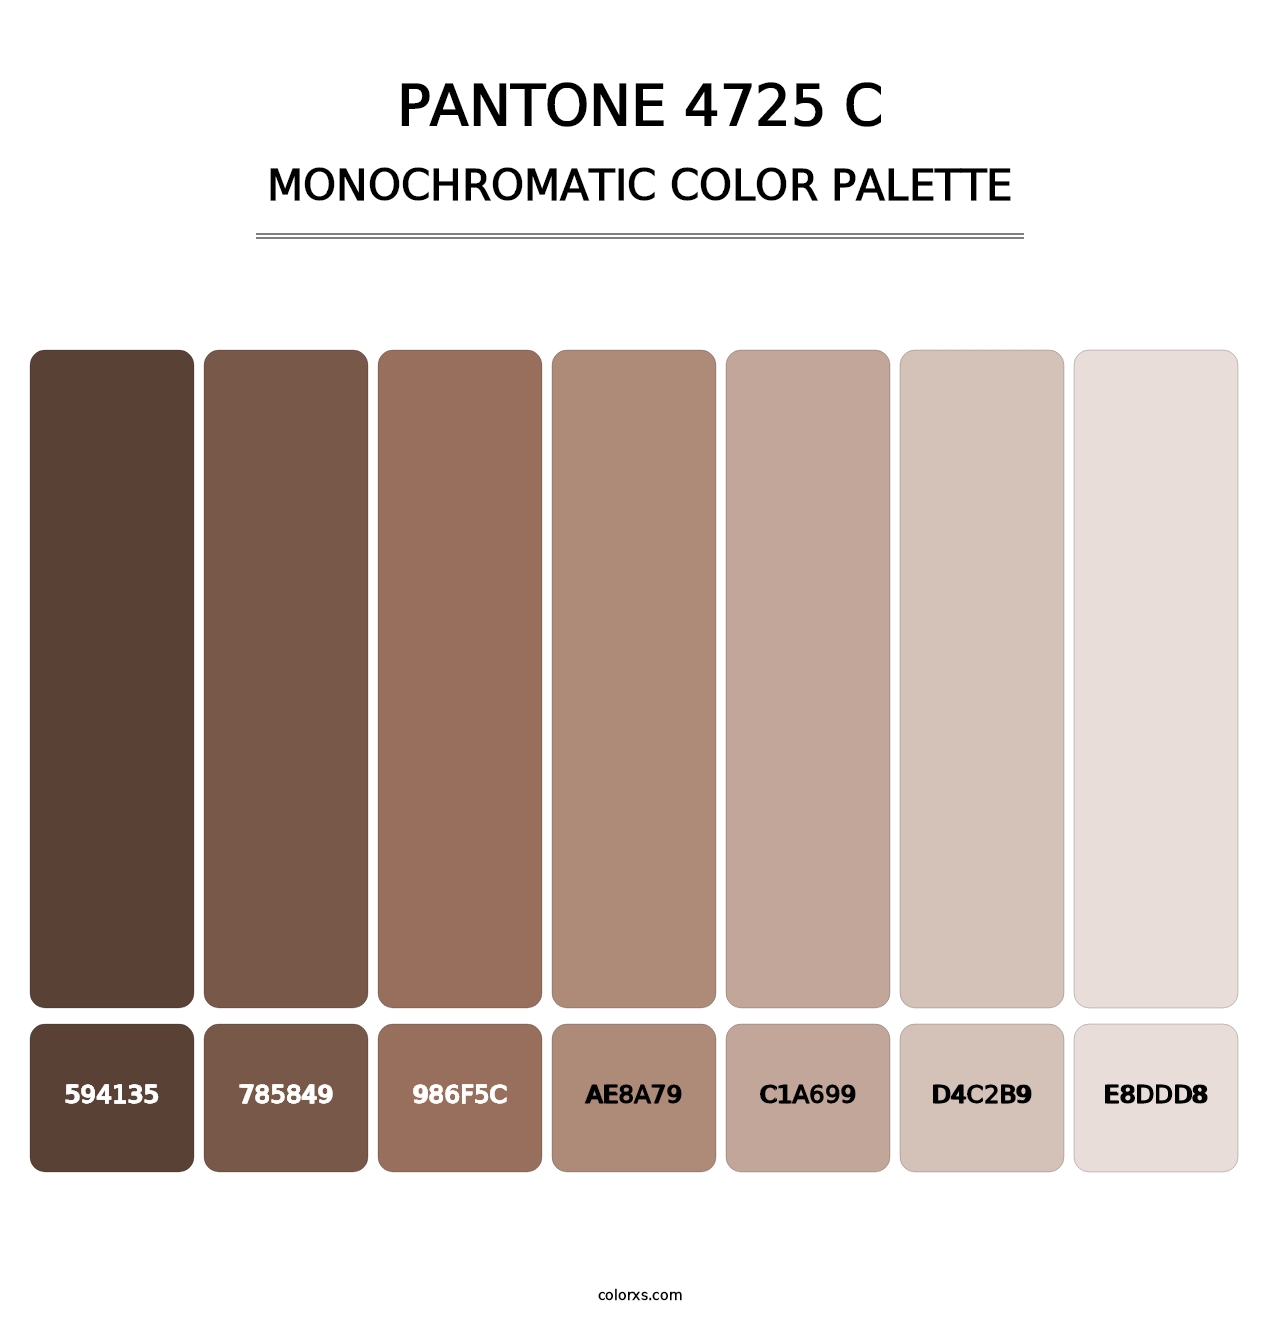 PANTONE 4725 C - Monochromatic Color Palette